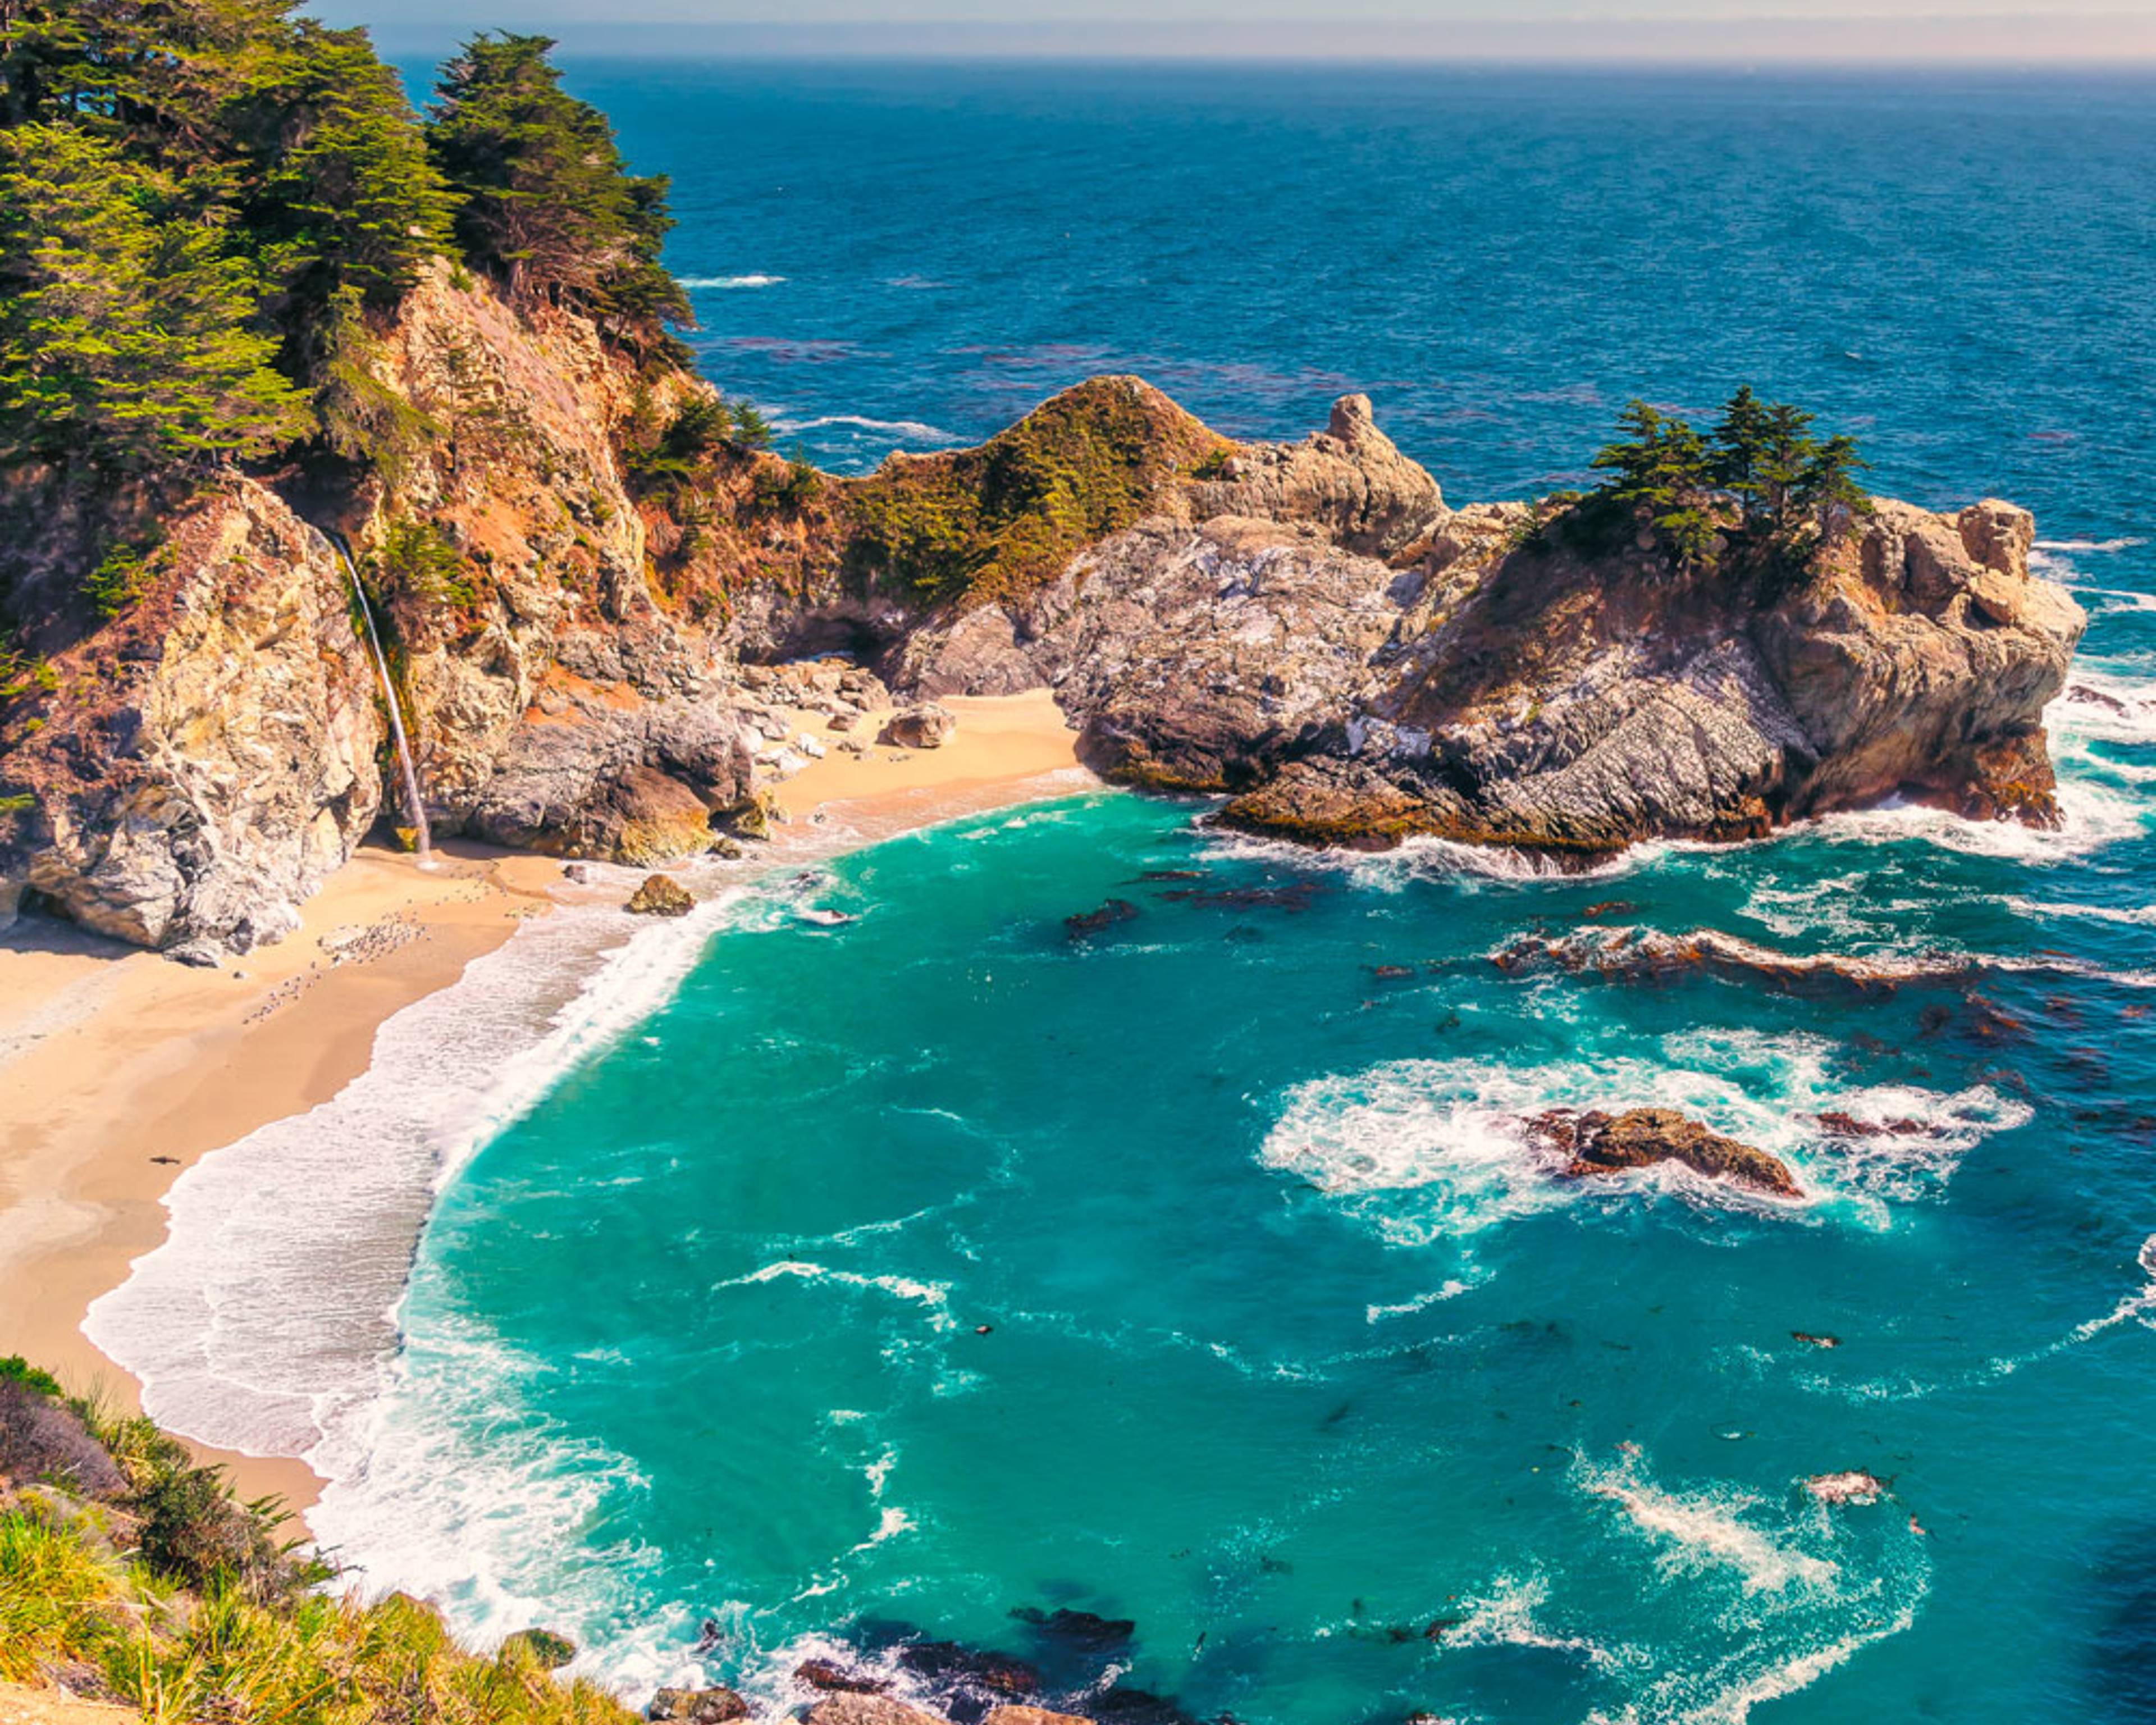 Découvrez les plus belles plages lors de votre voyage aux Etats-Unis 100% sur mesure